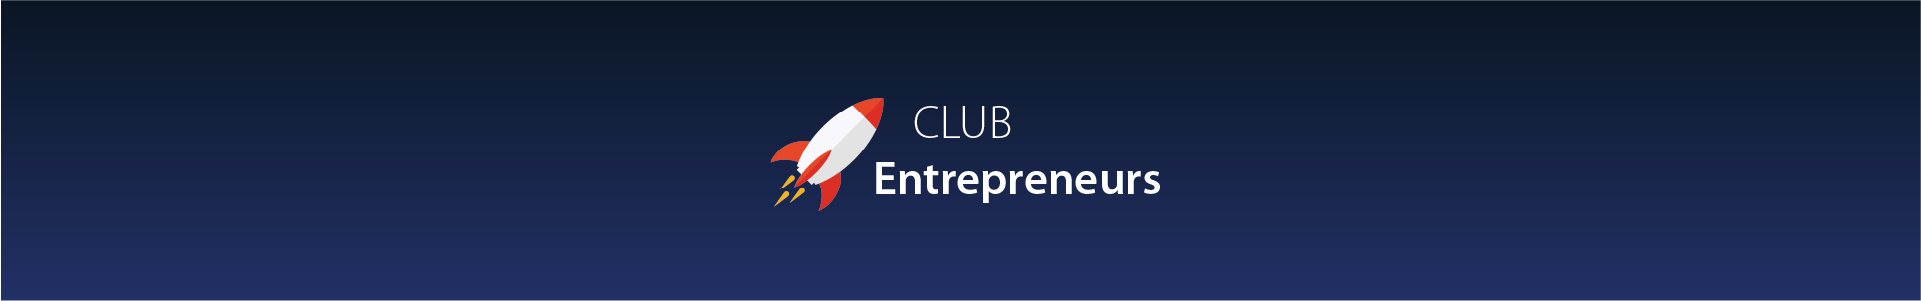 Bannière de présentation de Club entrepreneurs